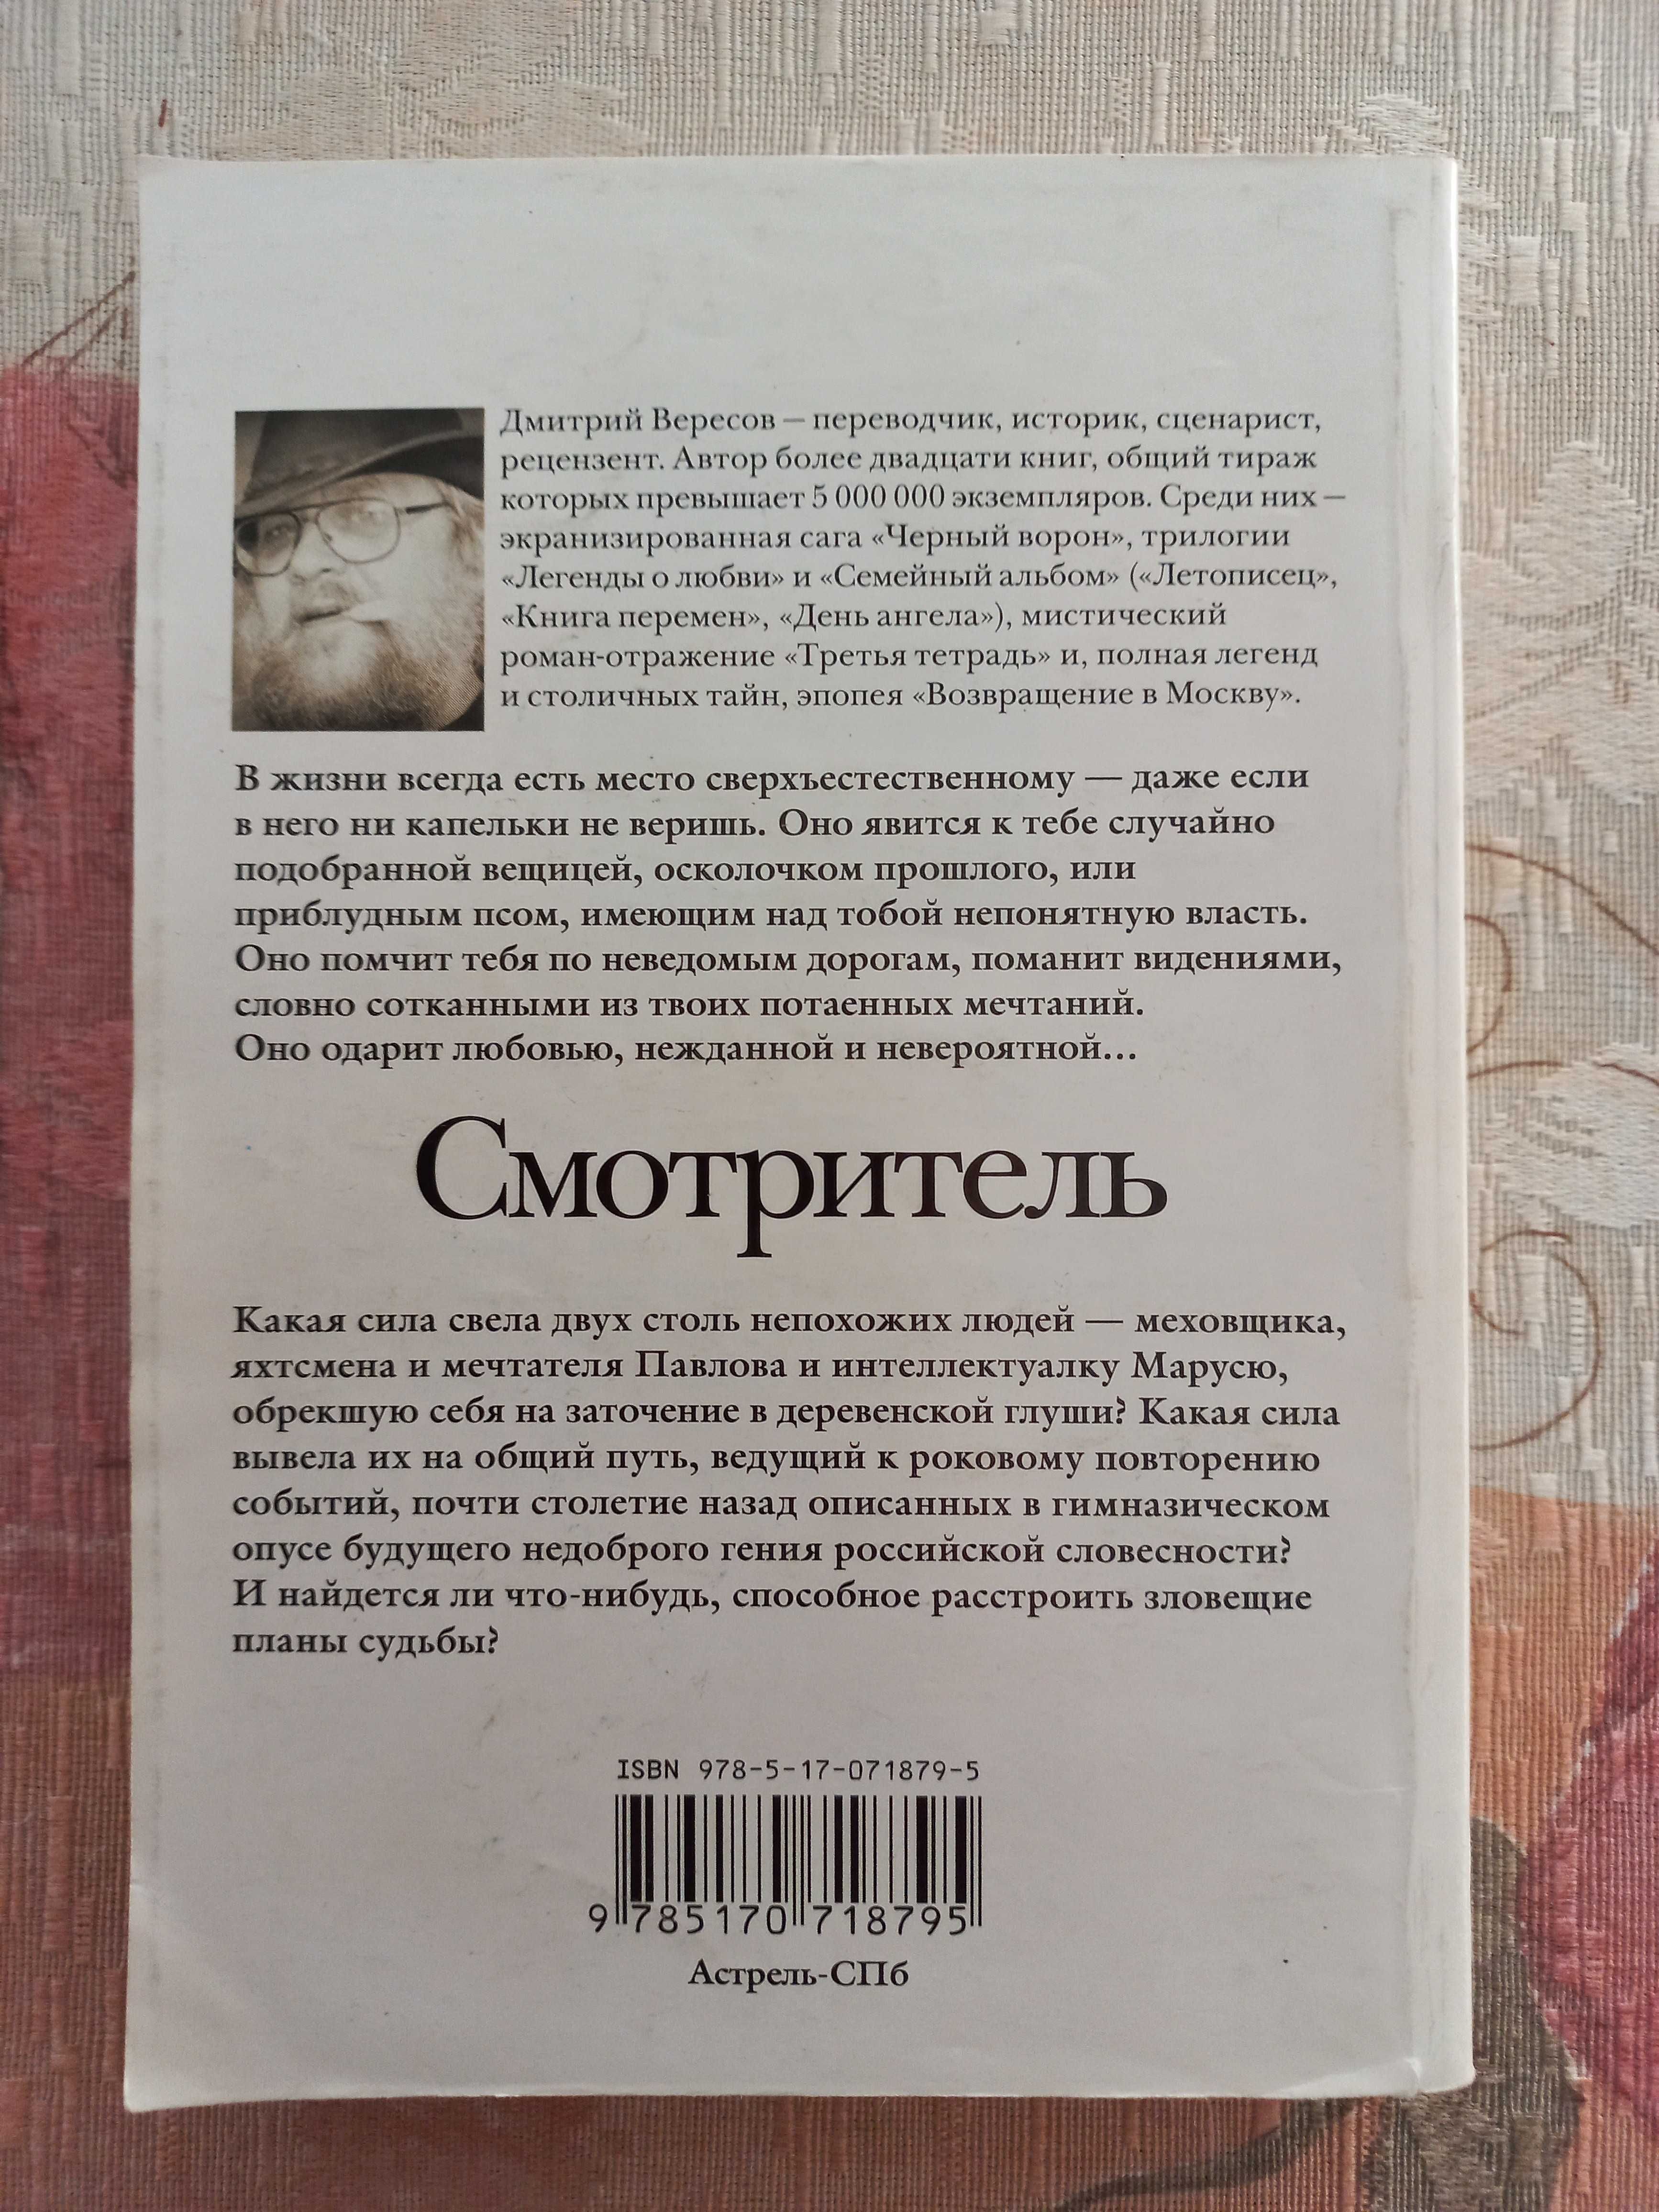 Книга "Смотритель", Дмитрий Вересов, 40 грн. по предоплате